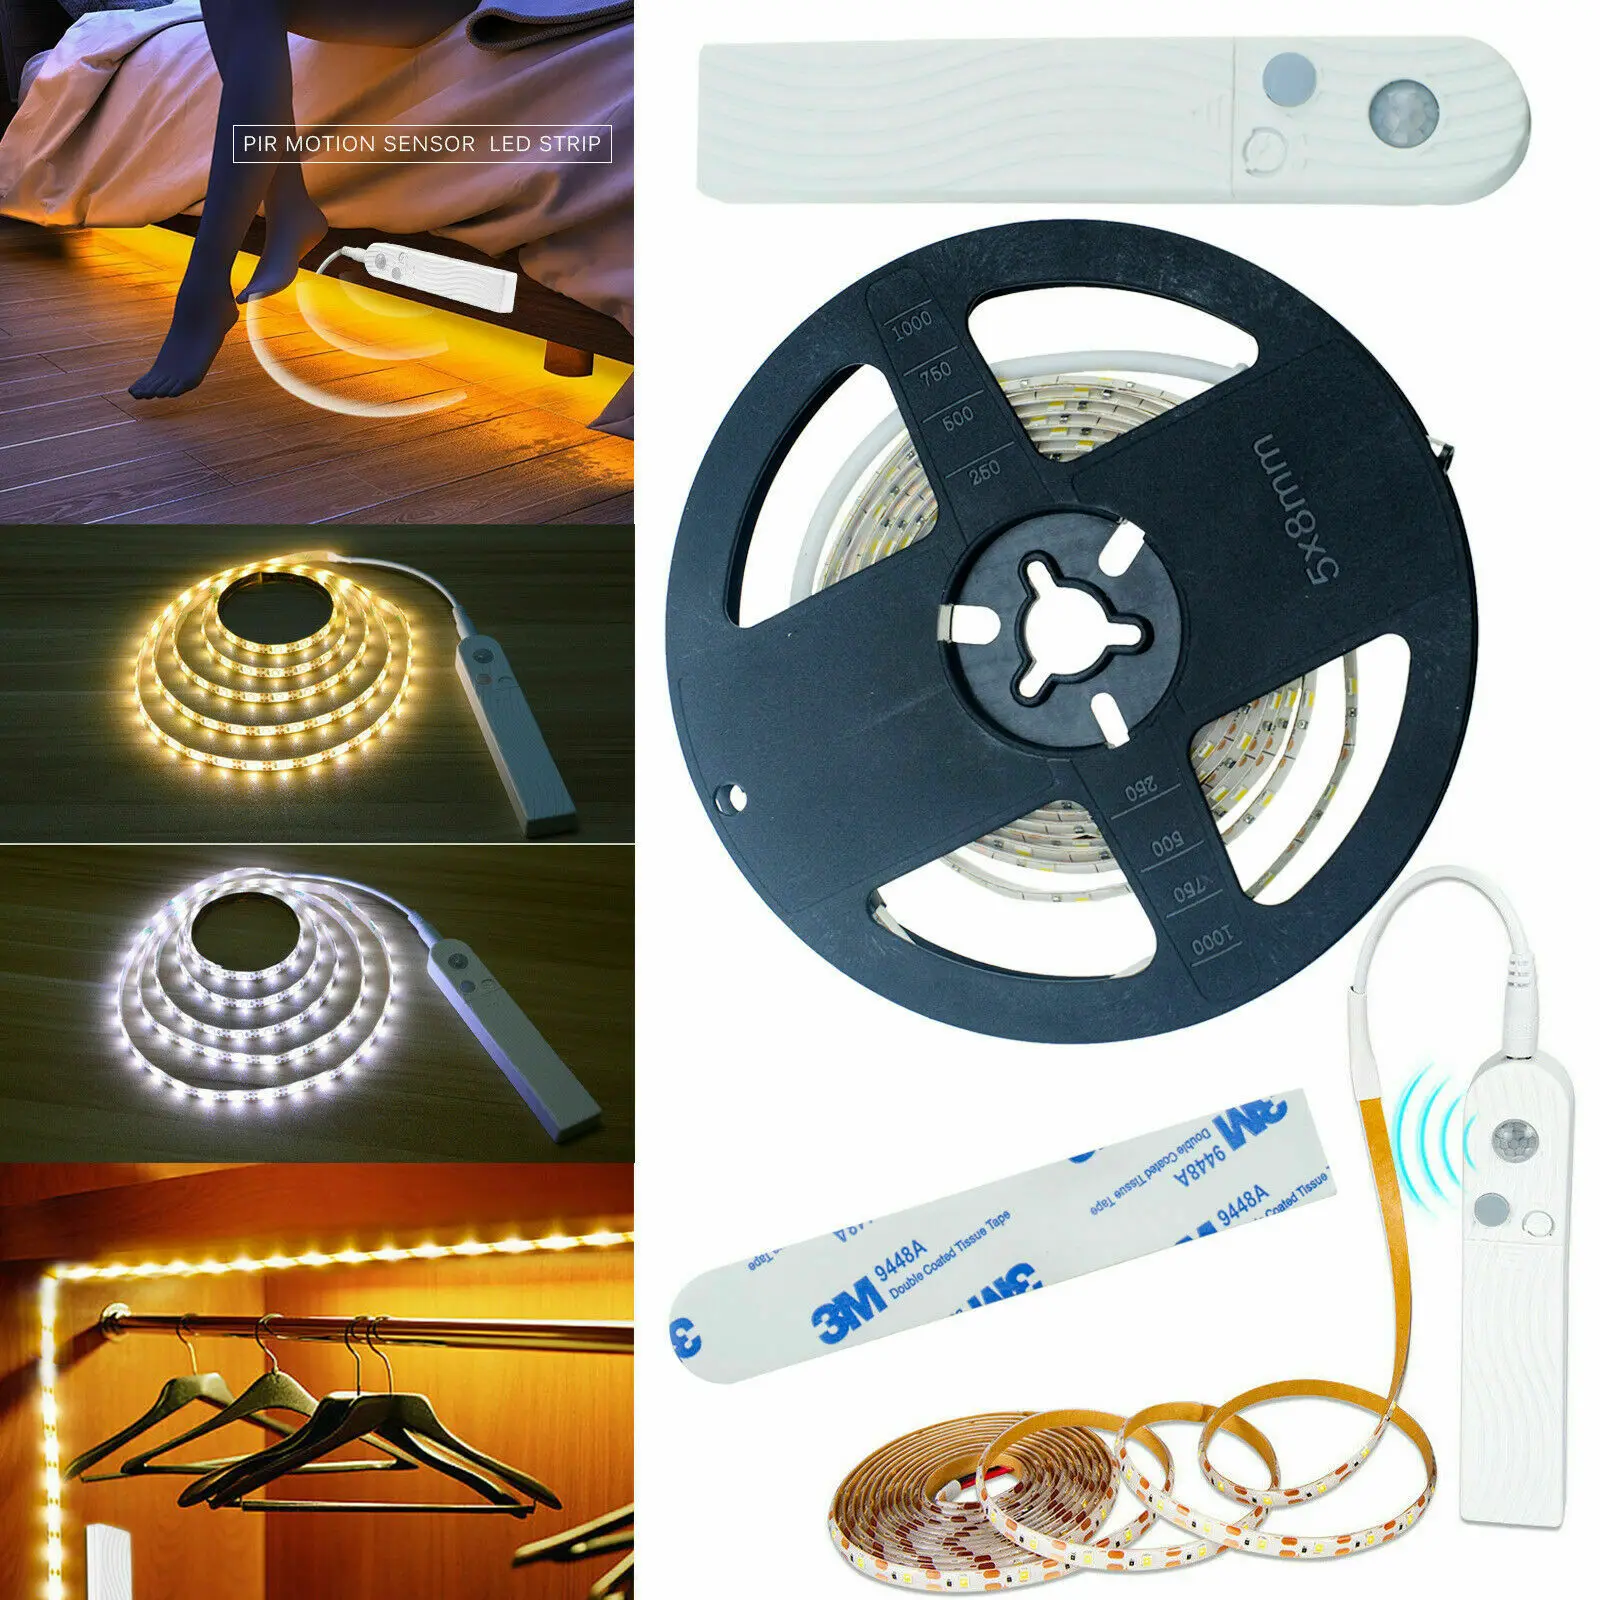 

5V 1M/3M/3M PIR Motion Sensor LED Strips Light Flexible Neon Stripe Ribbon Tape Fita Diode TV Backlight for Living Room Corridor